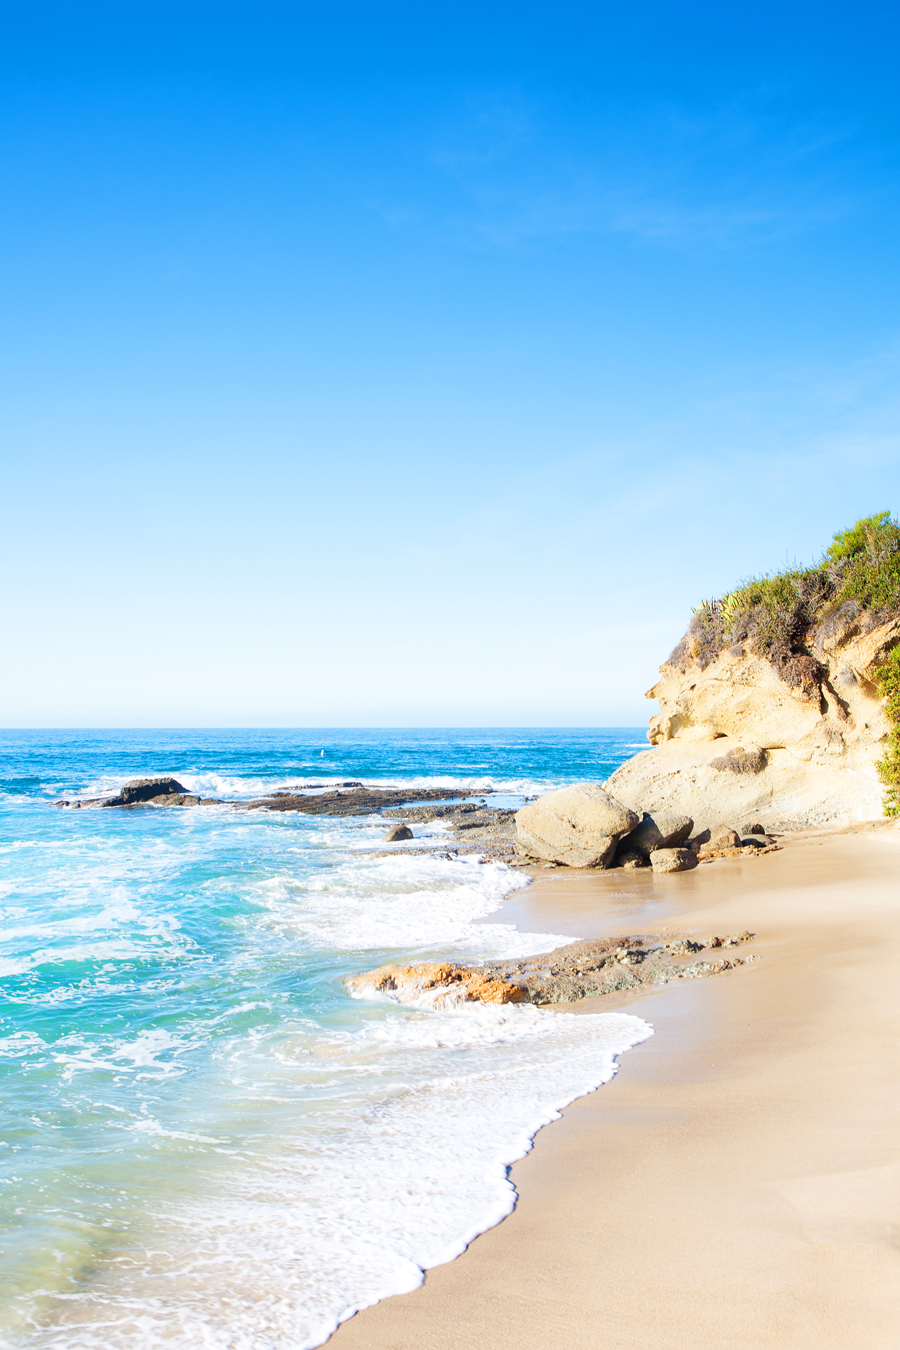 Laguna Beach: A Stroll along the Coast